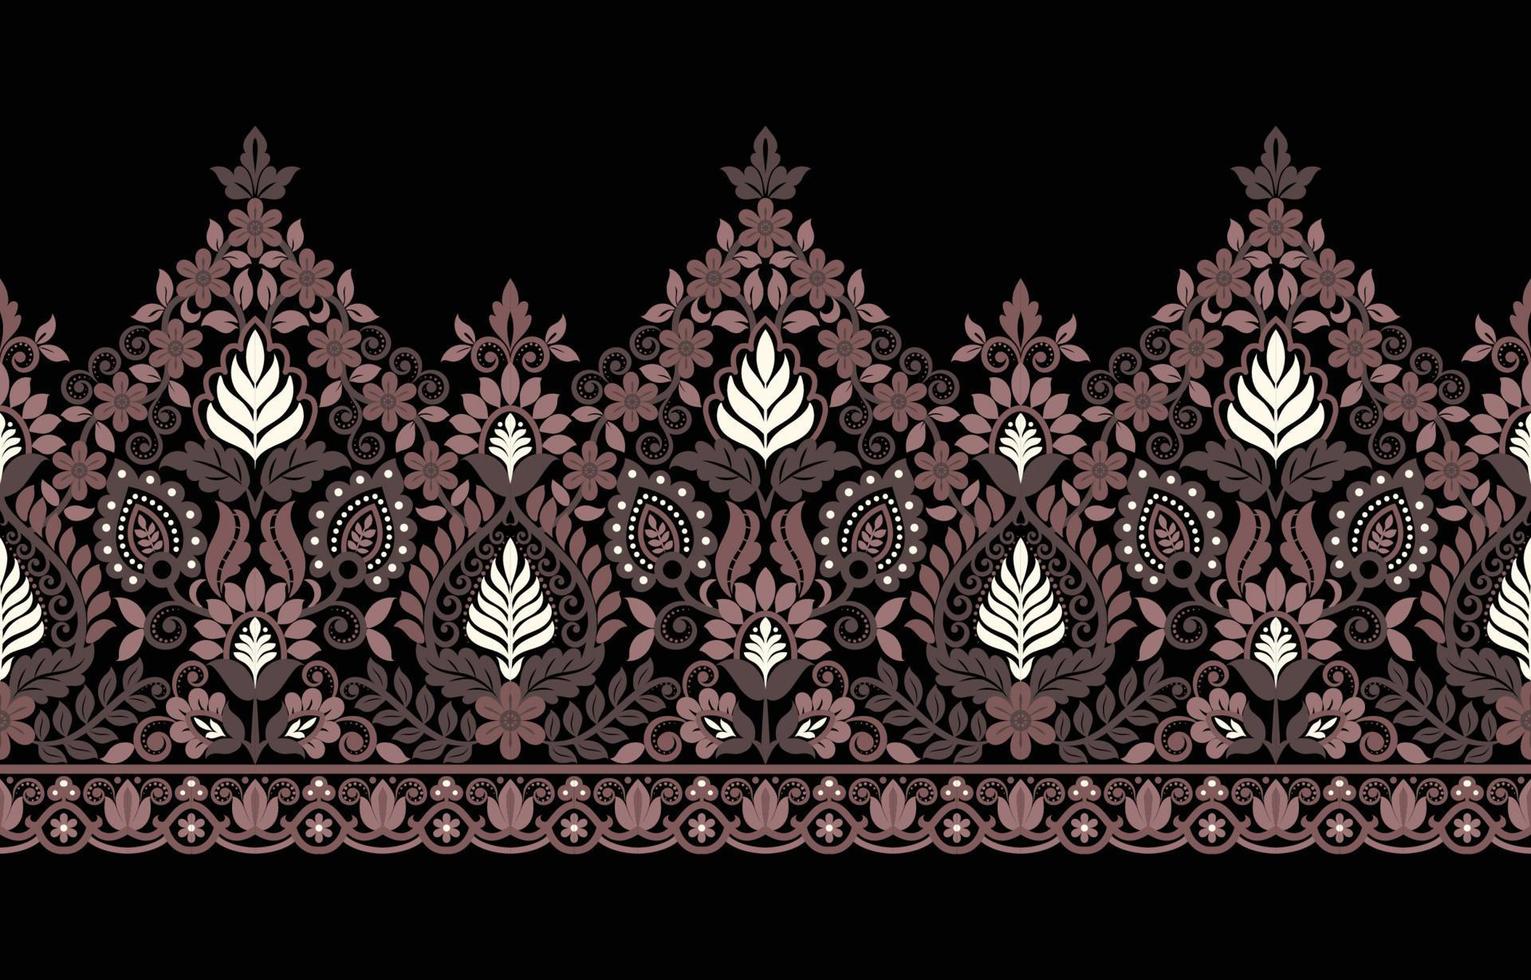 géométrique ethnique rétro oriental indien motif traditionnel design pour fond de décoration, tapis, papier peint, vêtements, emballage, tissu, carte, texture vecteur